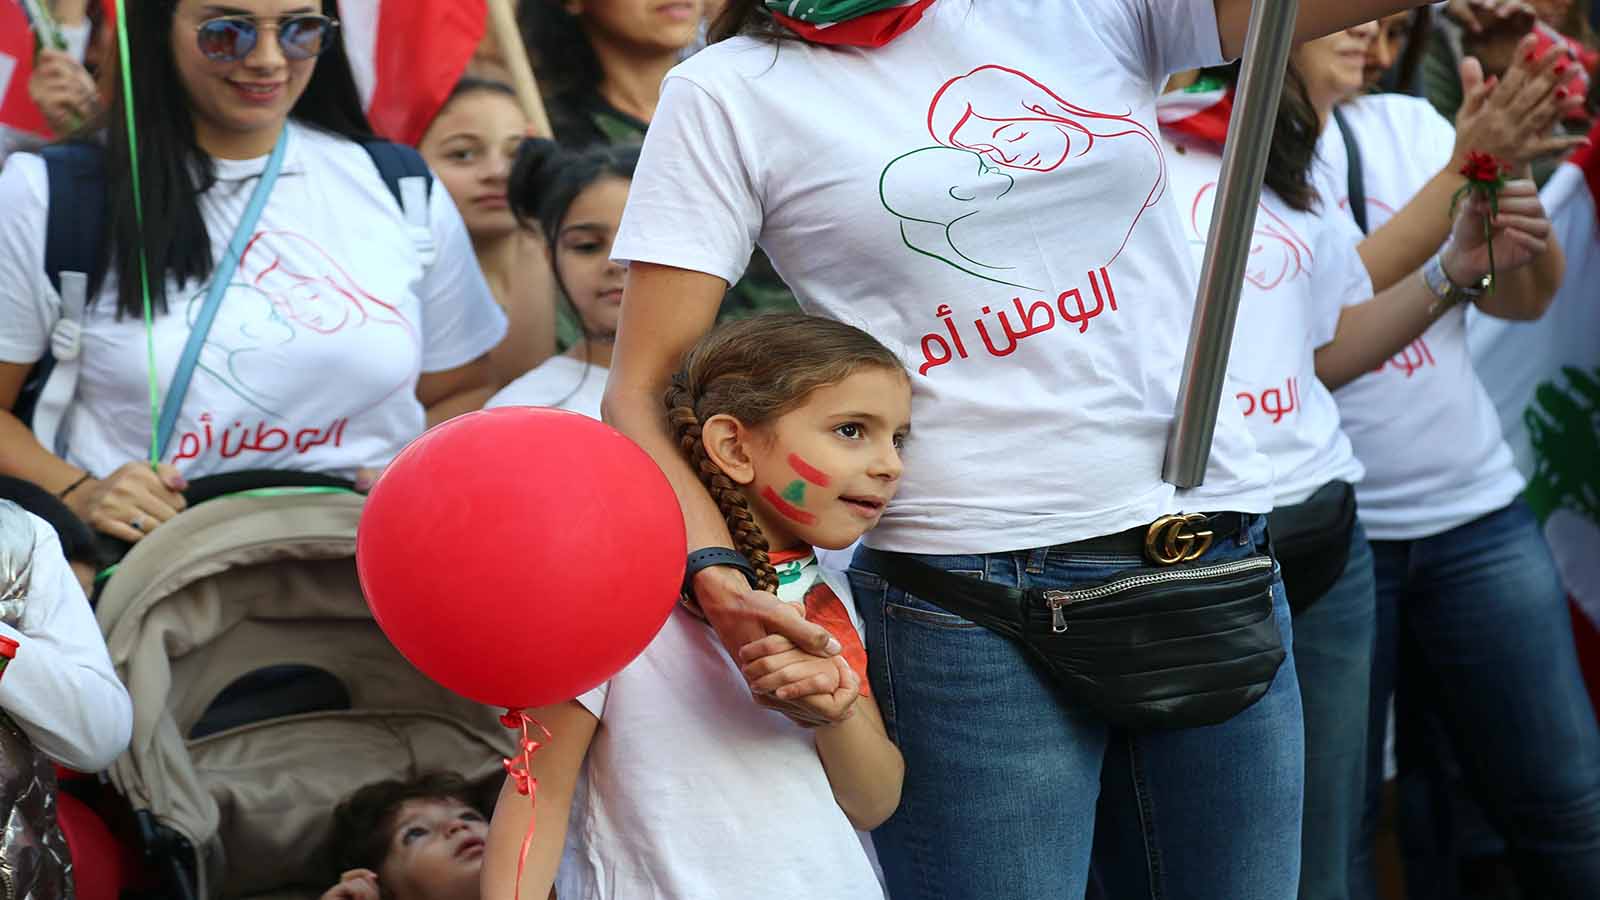 الثورة المدنية تنفجر فرحاً وتنجز استقلال الشعب اللبناني